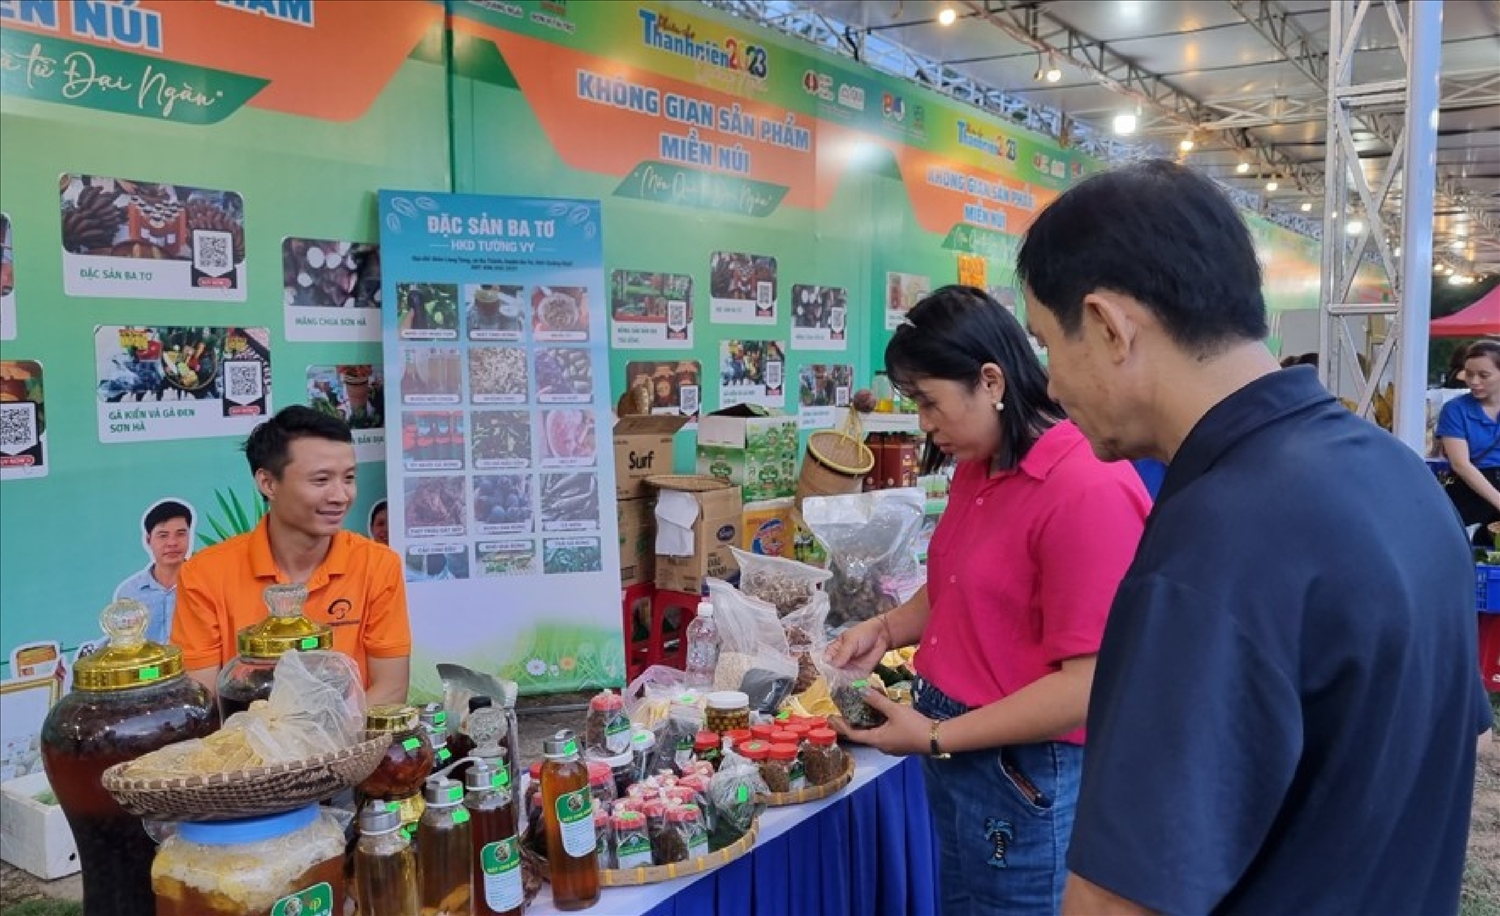 Nhiều hoạt động giới thiệu sản phẩm được chính quyền tỉnh Quảng Ngãi hỗ trợ cho các HTX.